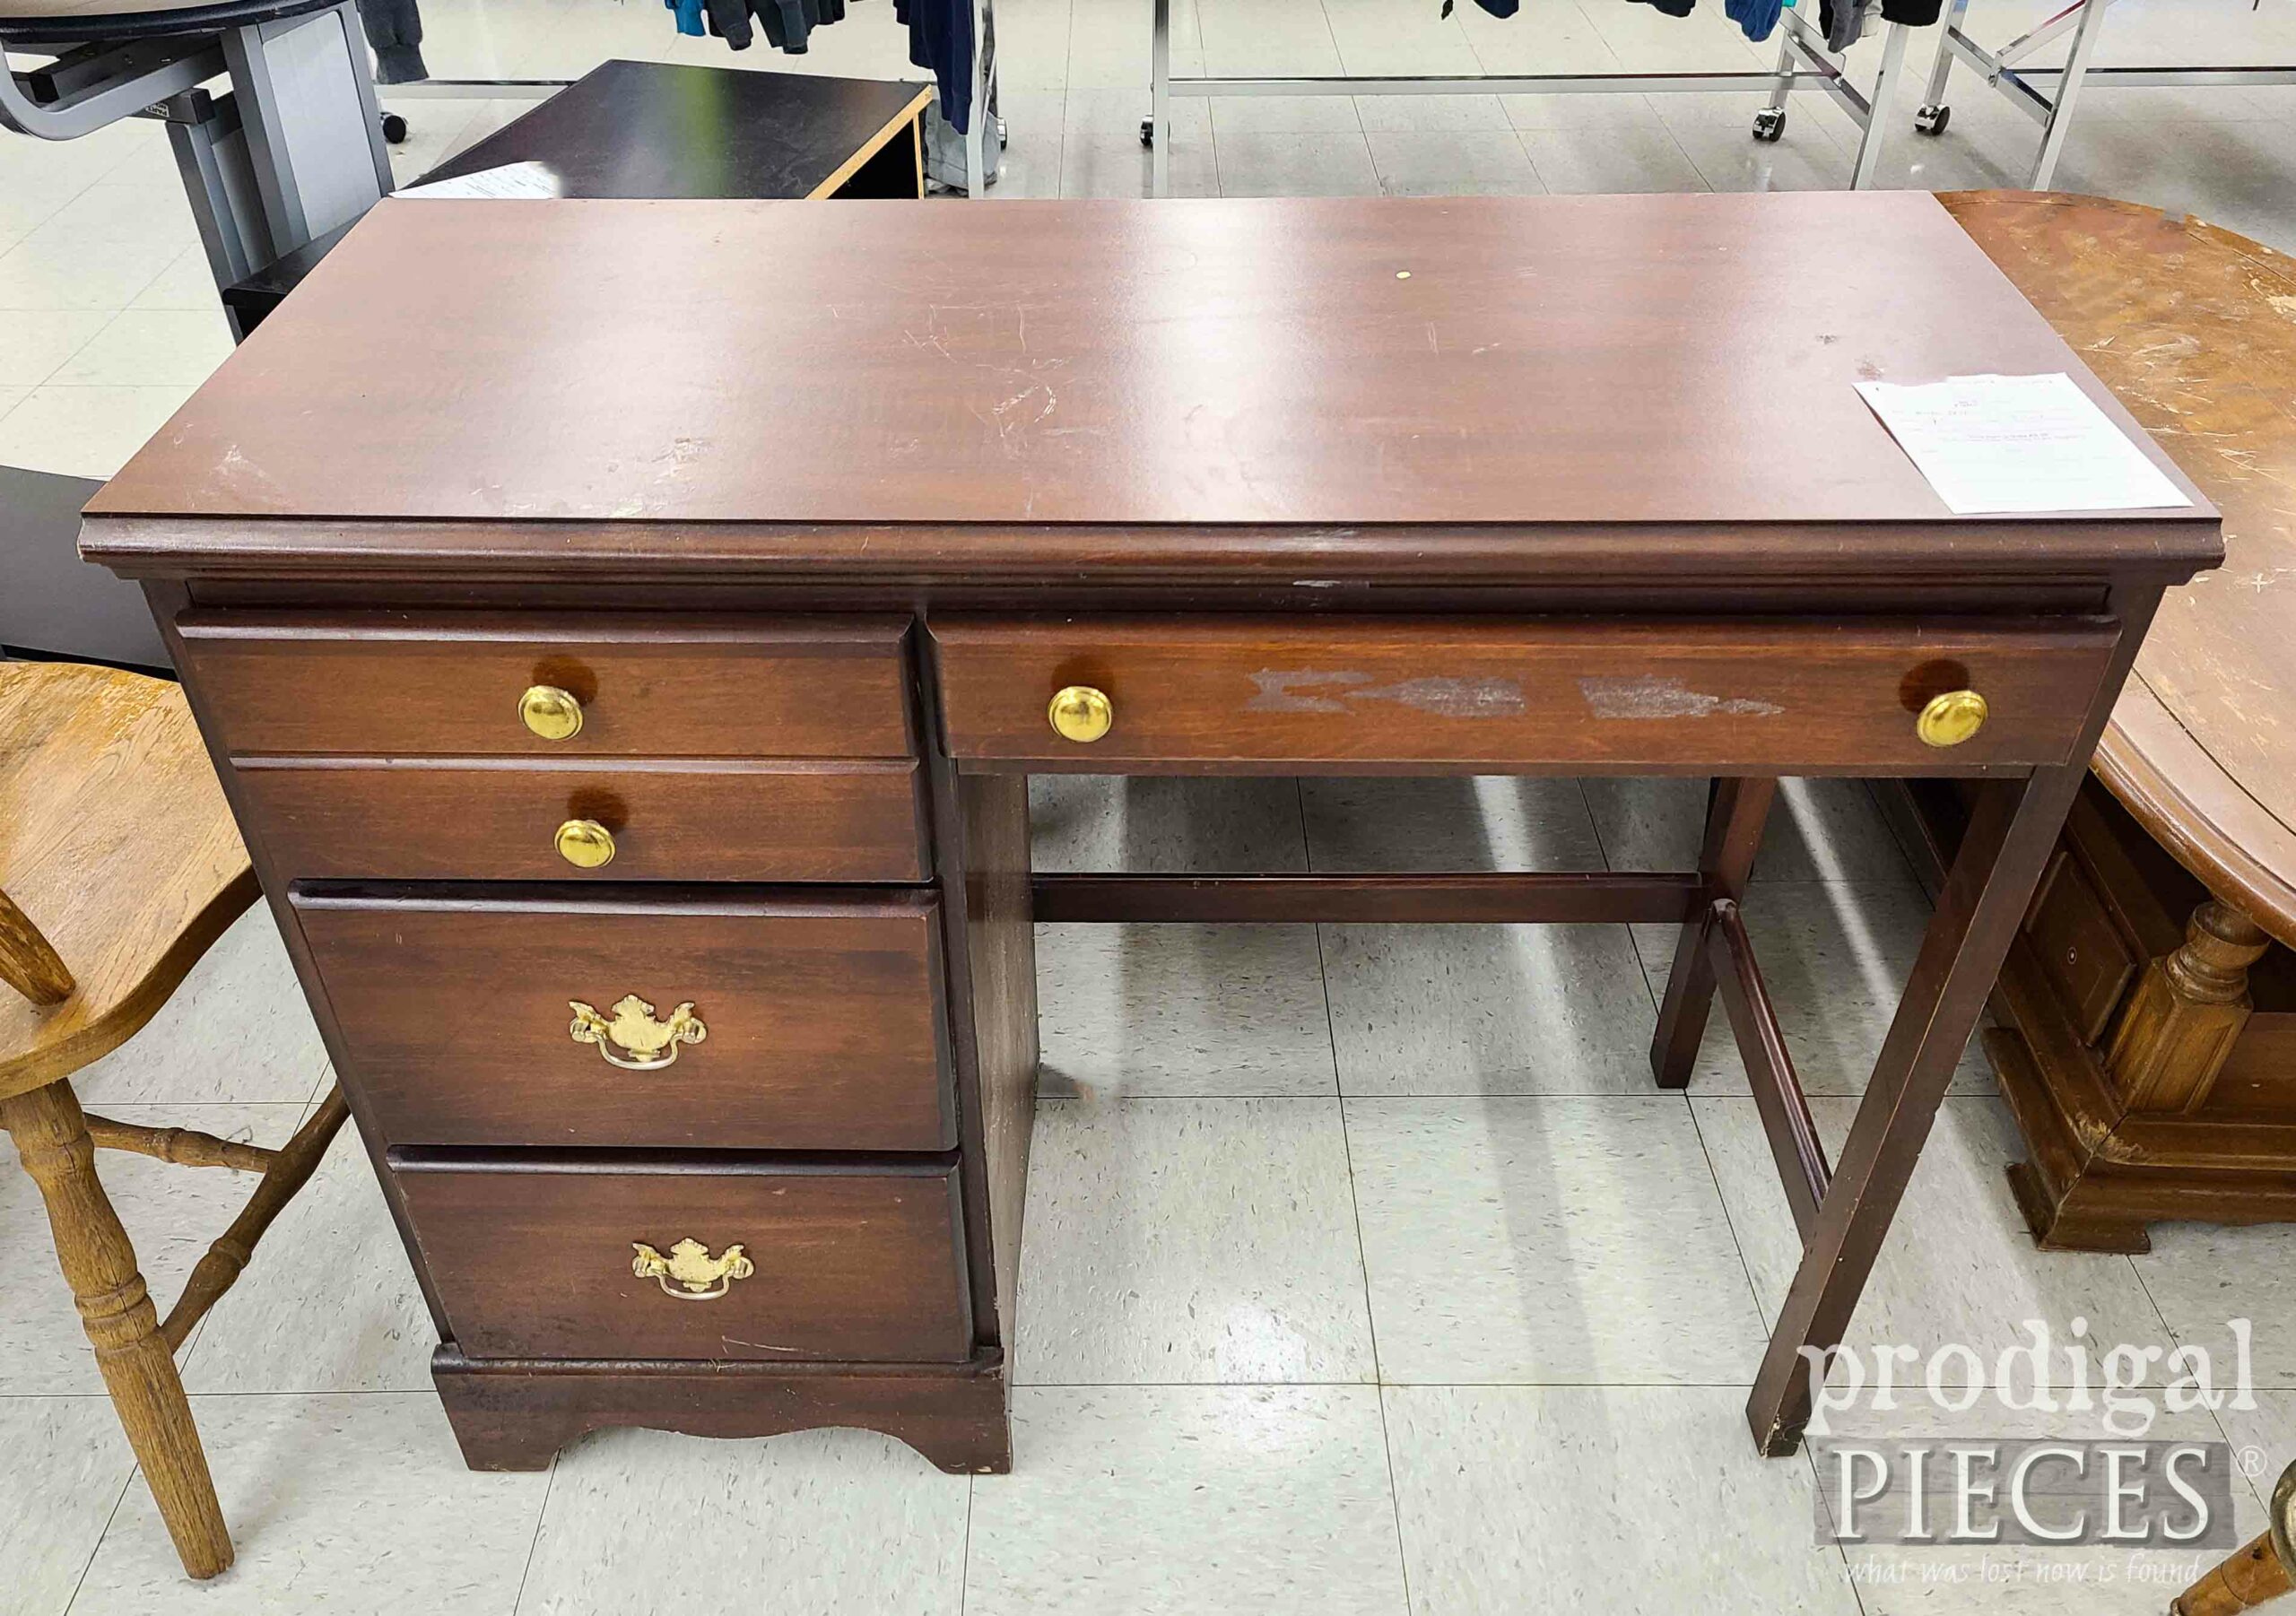 Thrifted Desk Before Makeover | prodigalpieces.com #prodigalpieces